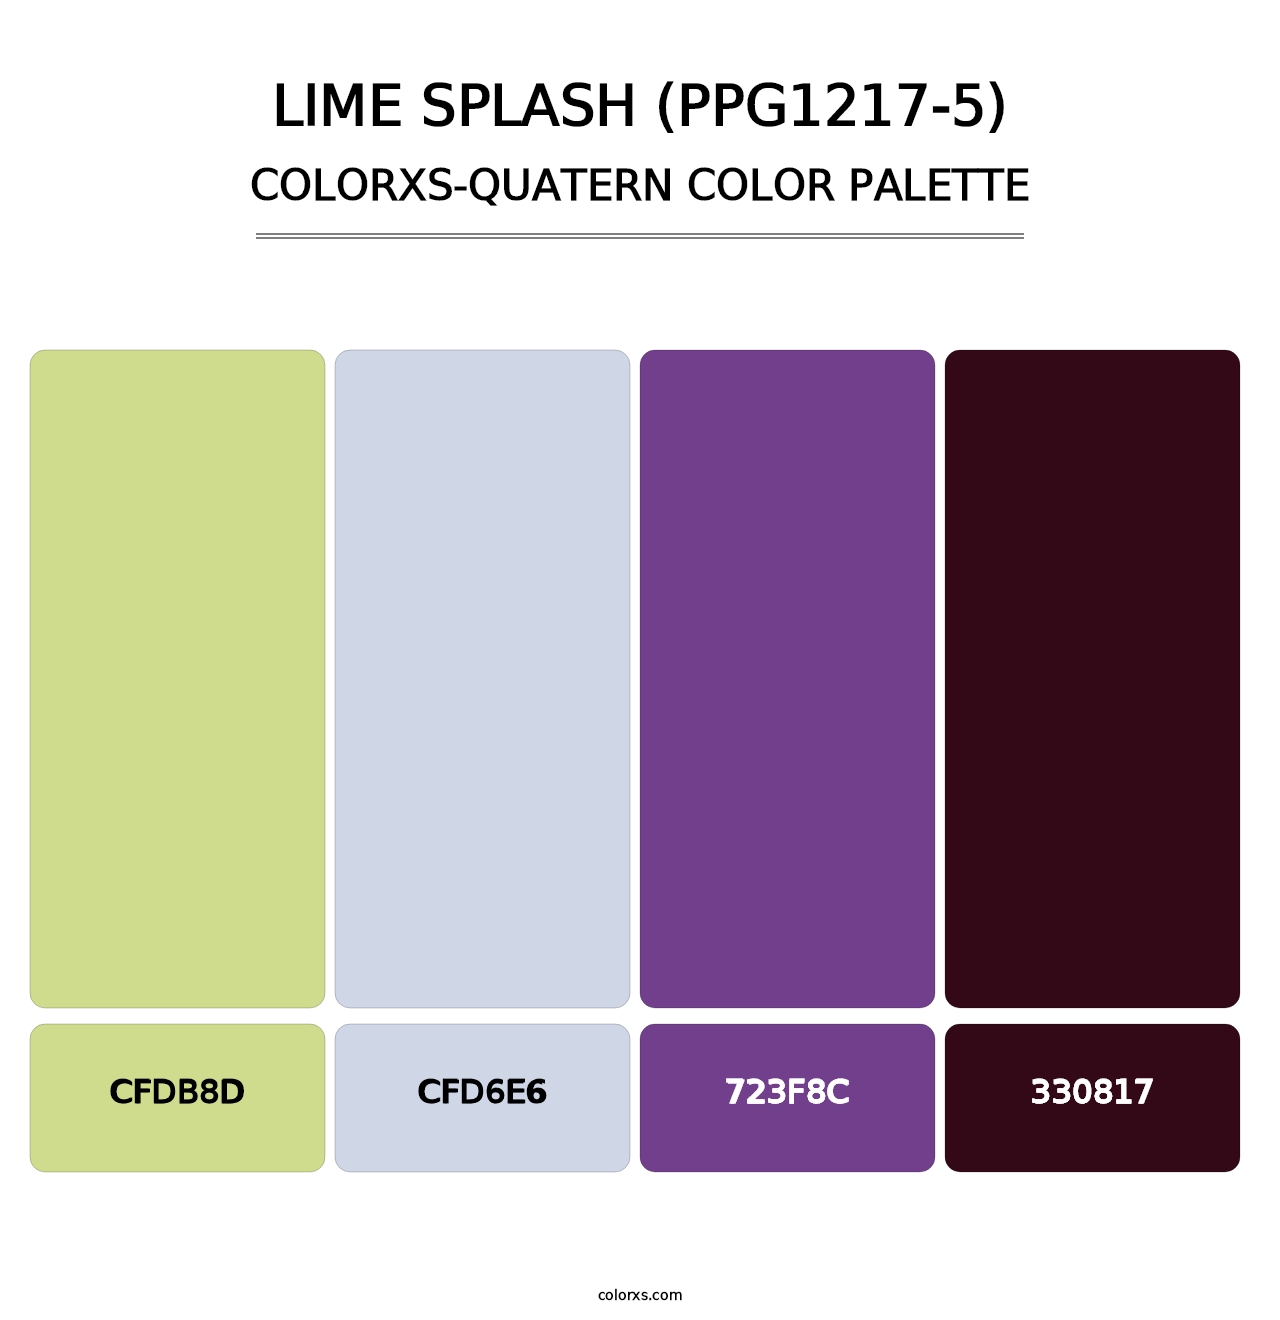 Lime Splash (PPG1217-5) - Colorxs Quatern Palette